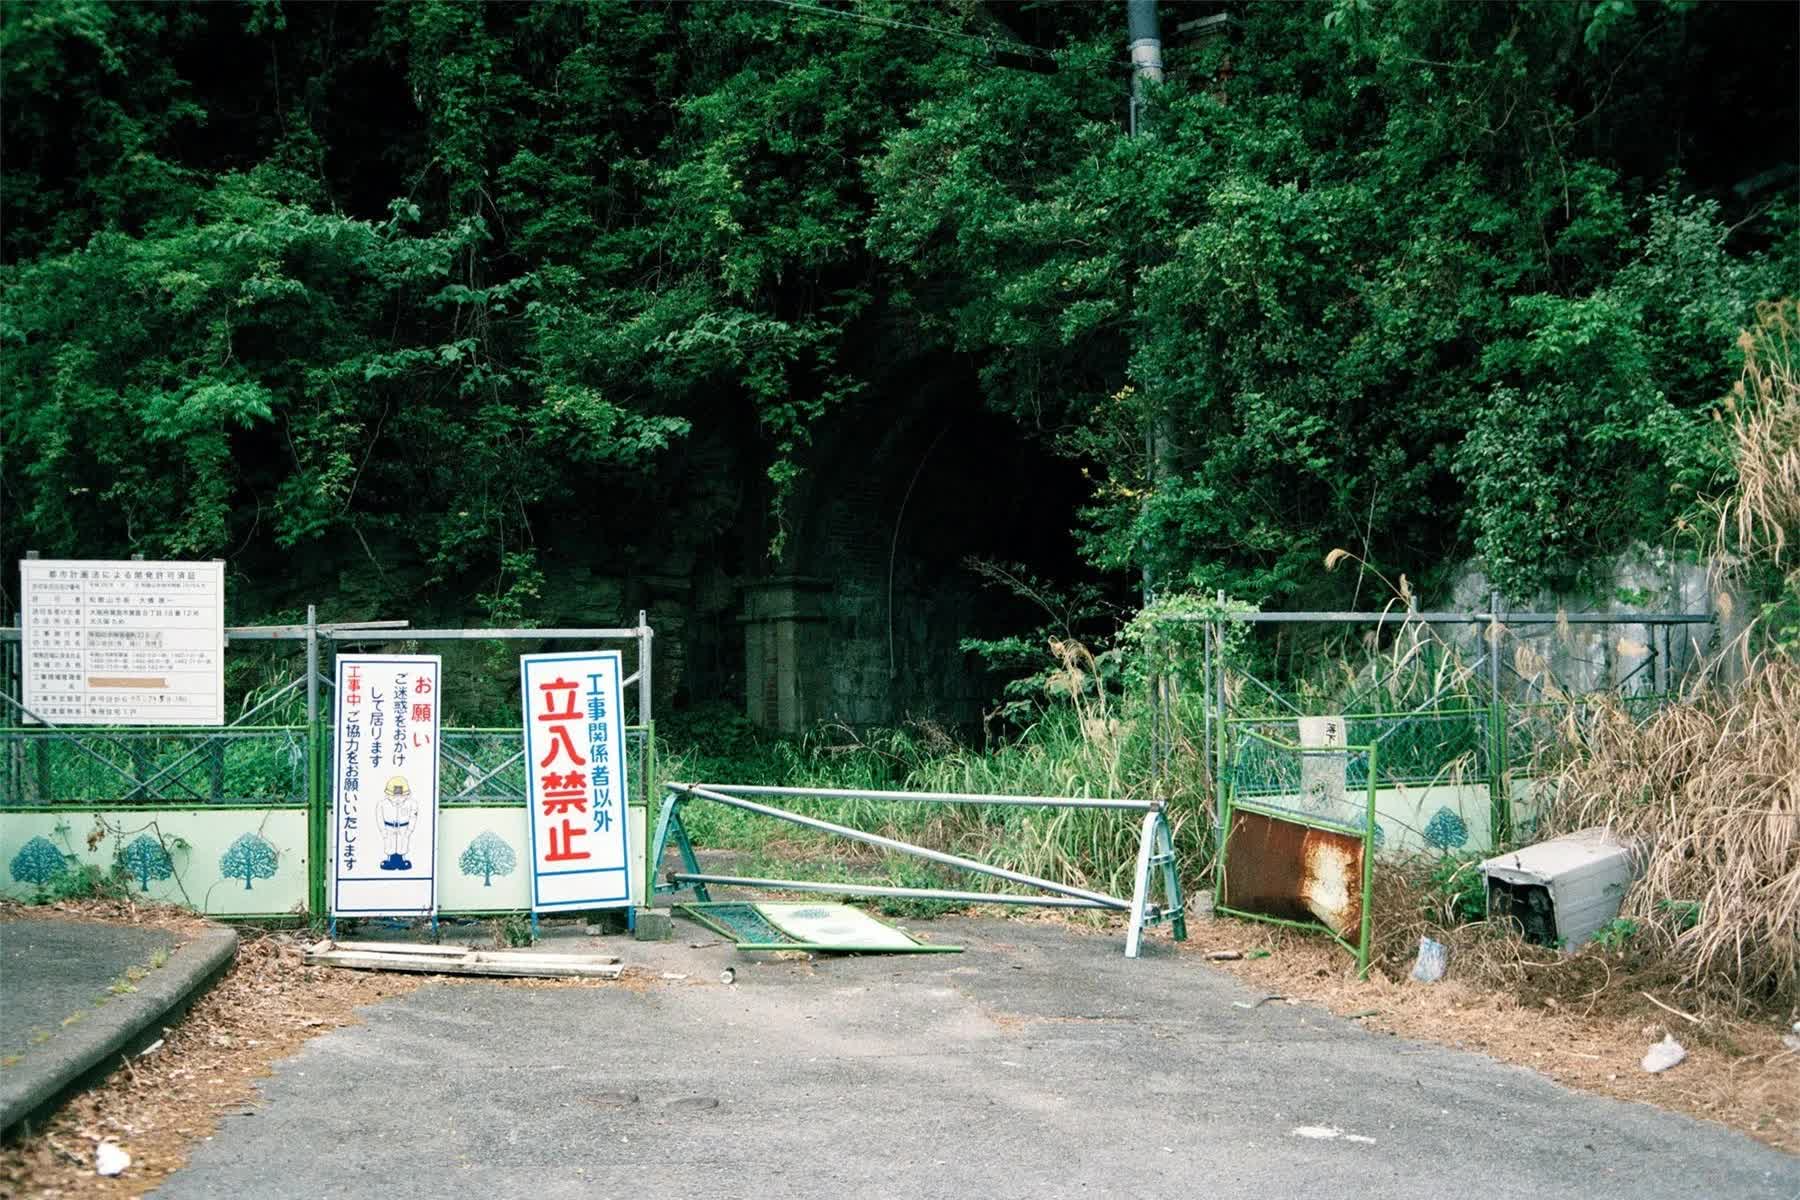 Đường hầm Inunaki và những sự thật ghê rợn về con đường dẫn vào "Ngôi Làng Tử Khí" ở Nhật Bản- Ảnh 4.